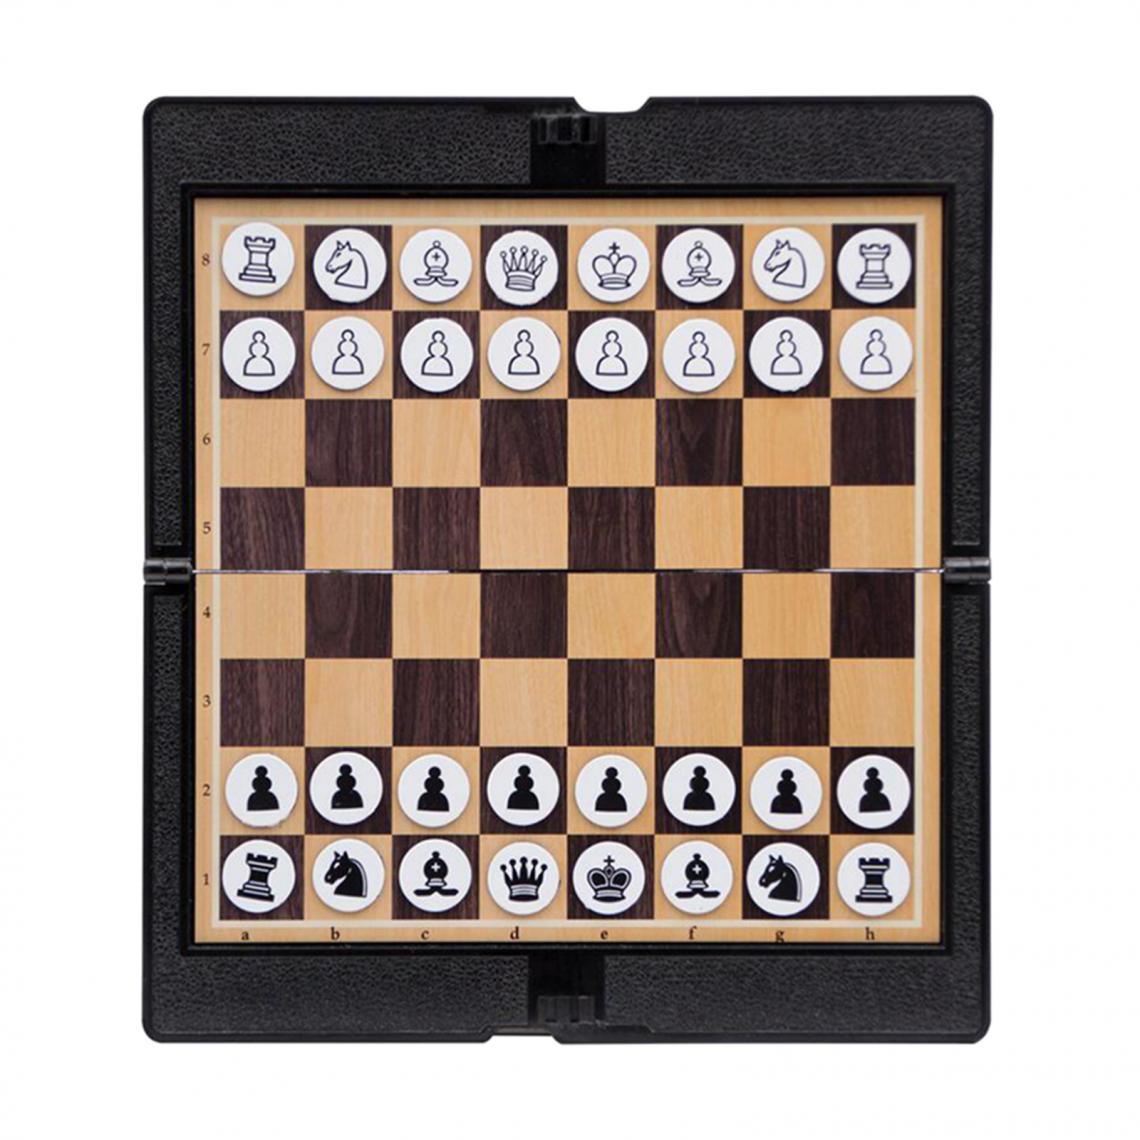 marque generique - Pliable Mini Magnétique Jeu d'échecs Portable Poche Portefeuille Échiquier Jeux pour Camping Voyage - Jeux de stratégie